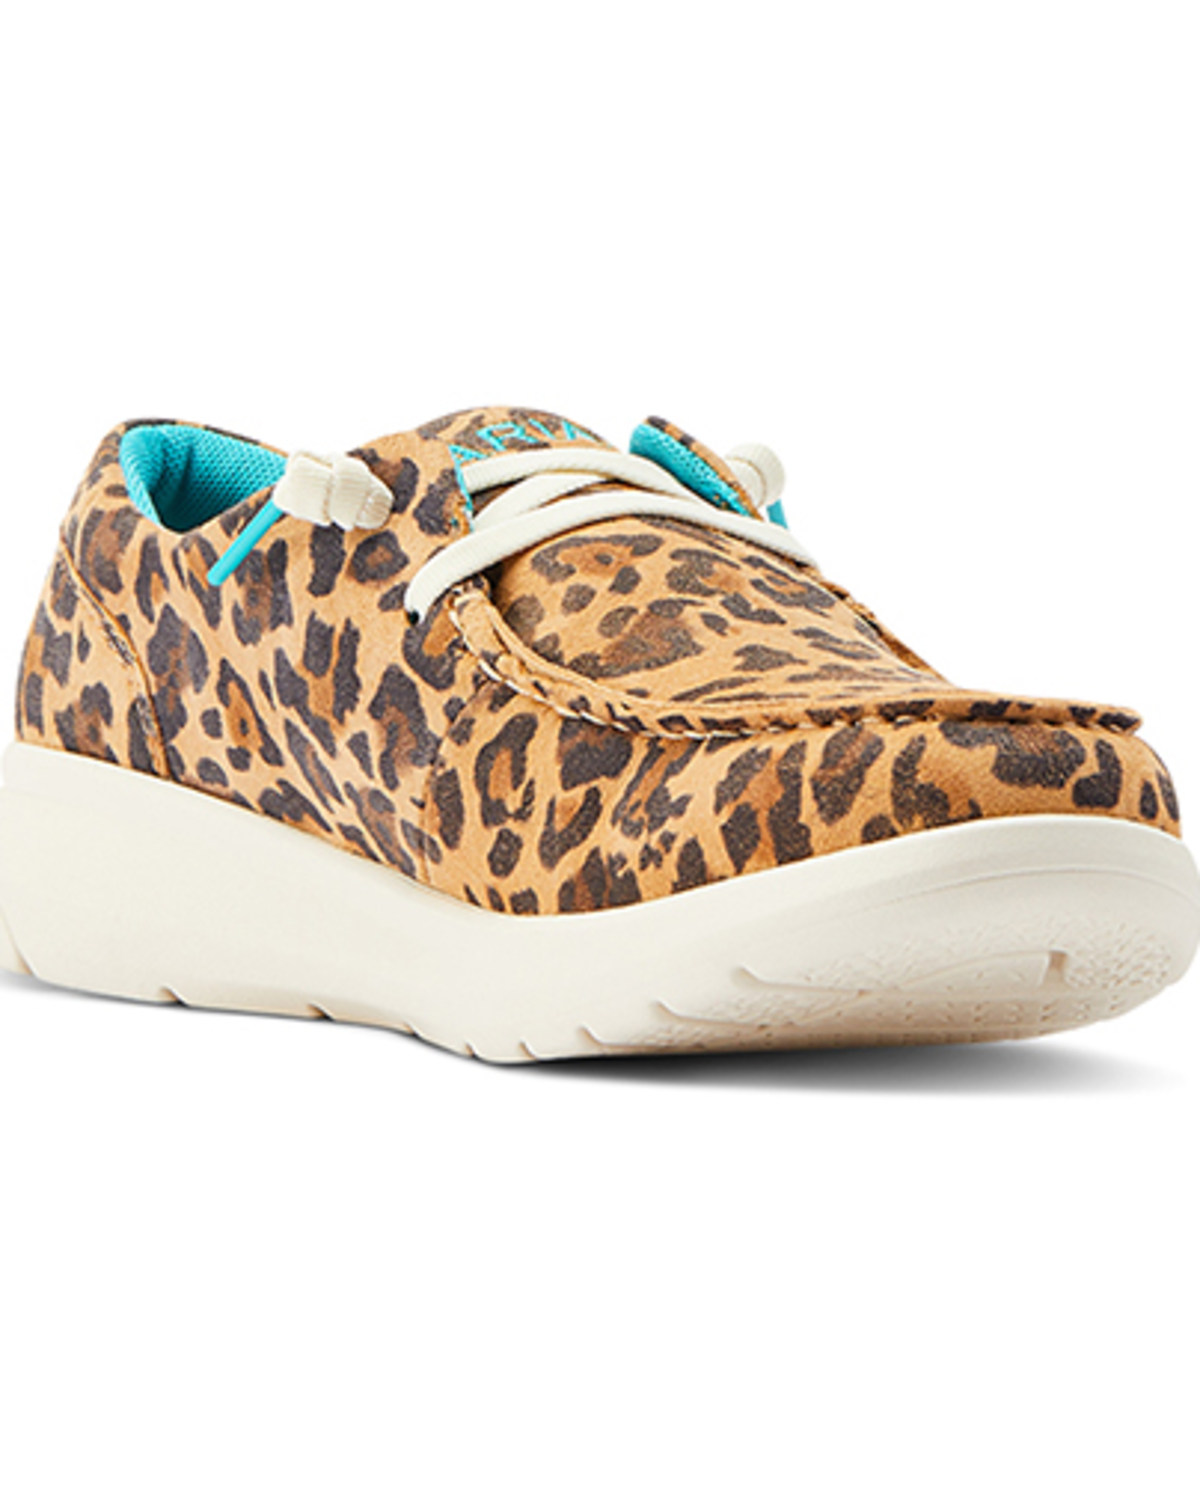 Ariat Women's Hilo Leopard Print Casual Shoes - Moc Toe